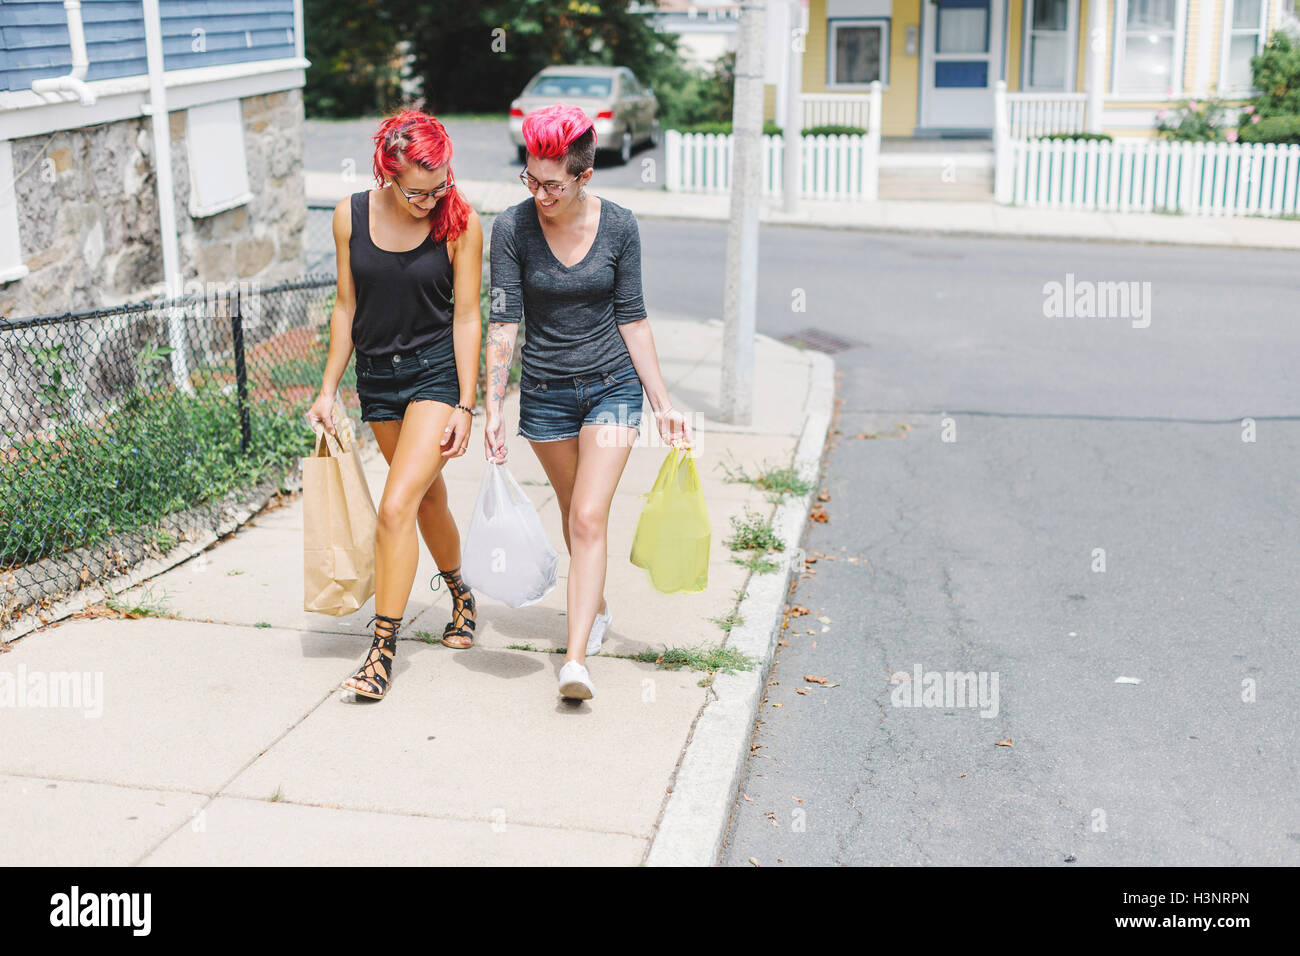 Zwei Freundinnen mit rosa Haaren zu Fuß auf dem Bürgersteig Einkaufstaschen tragen Stockfoto